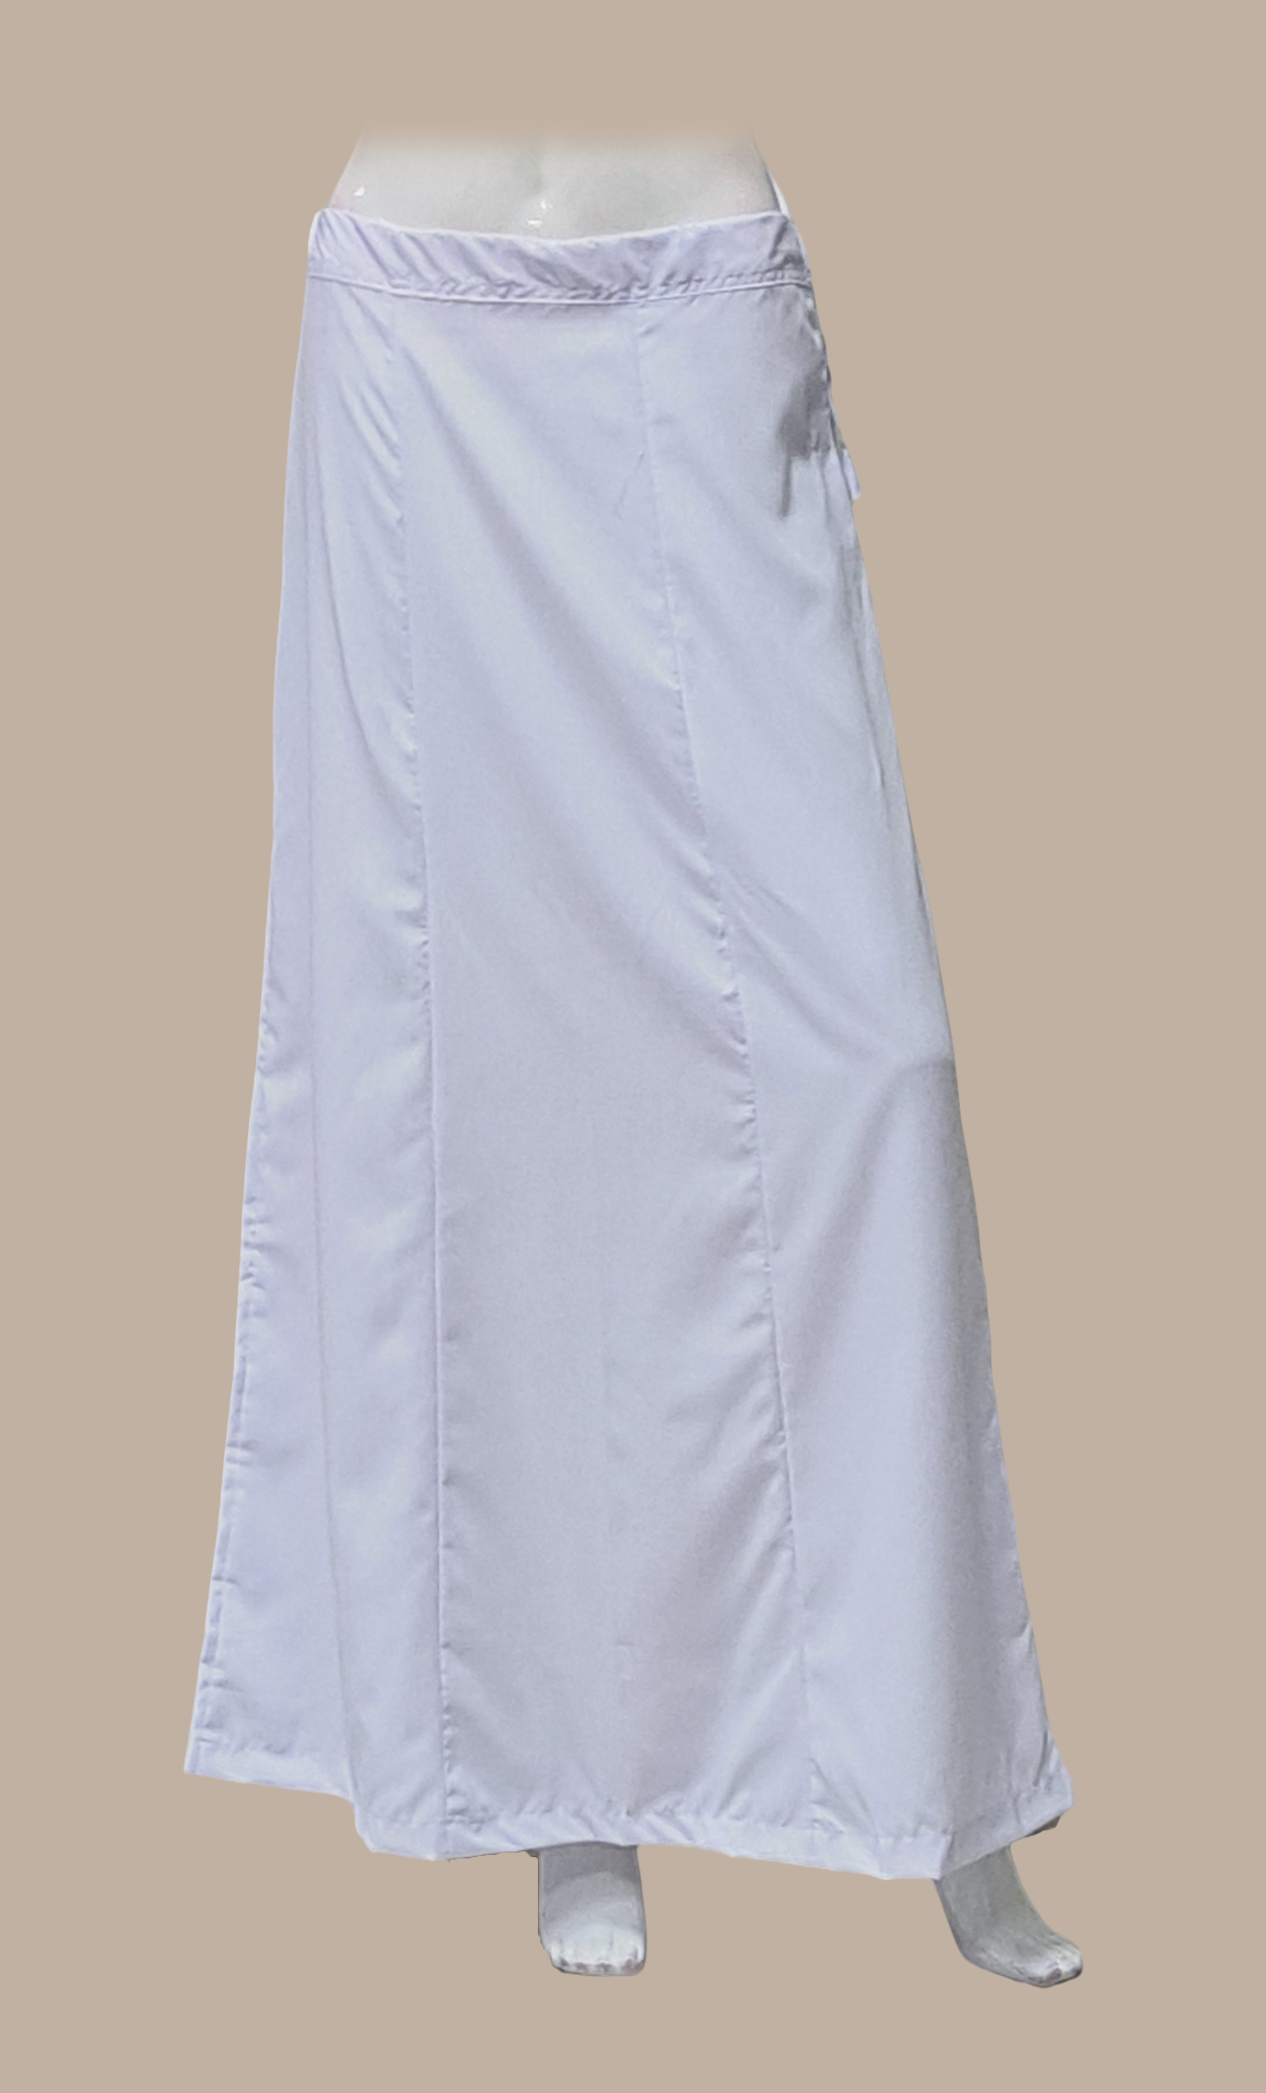 White Cotton Under Skirt